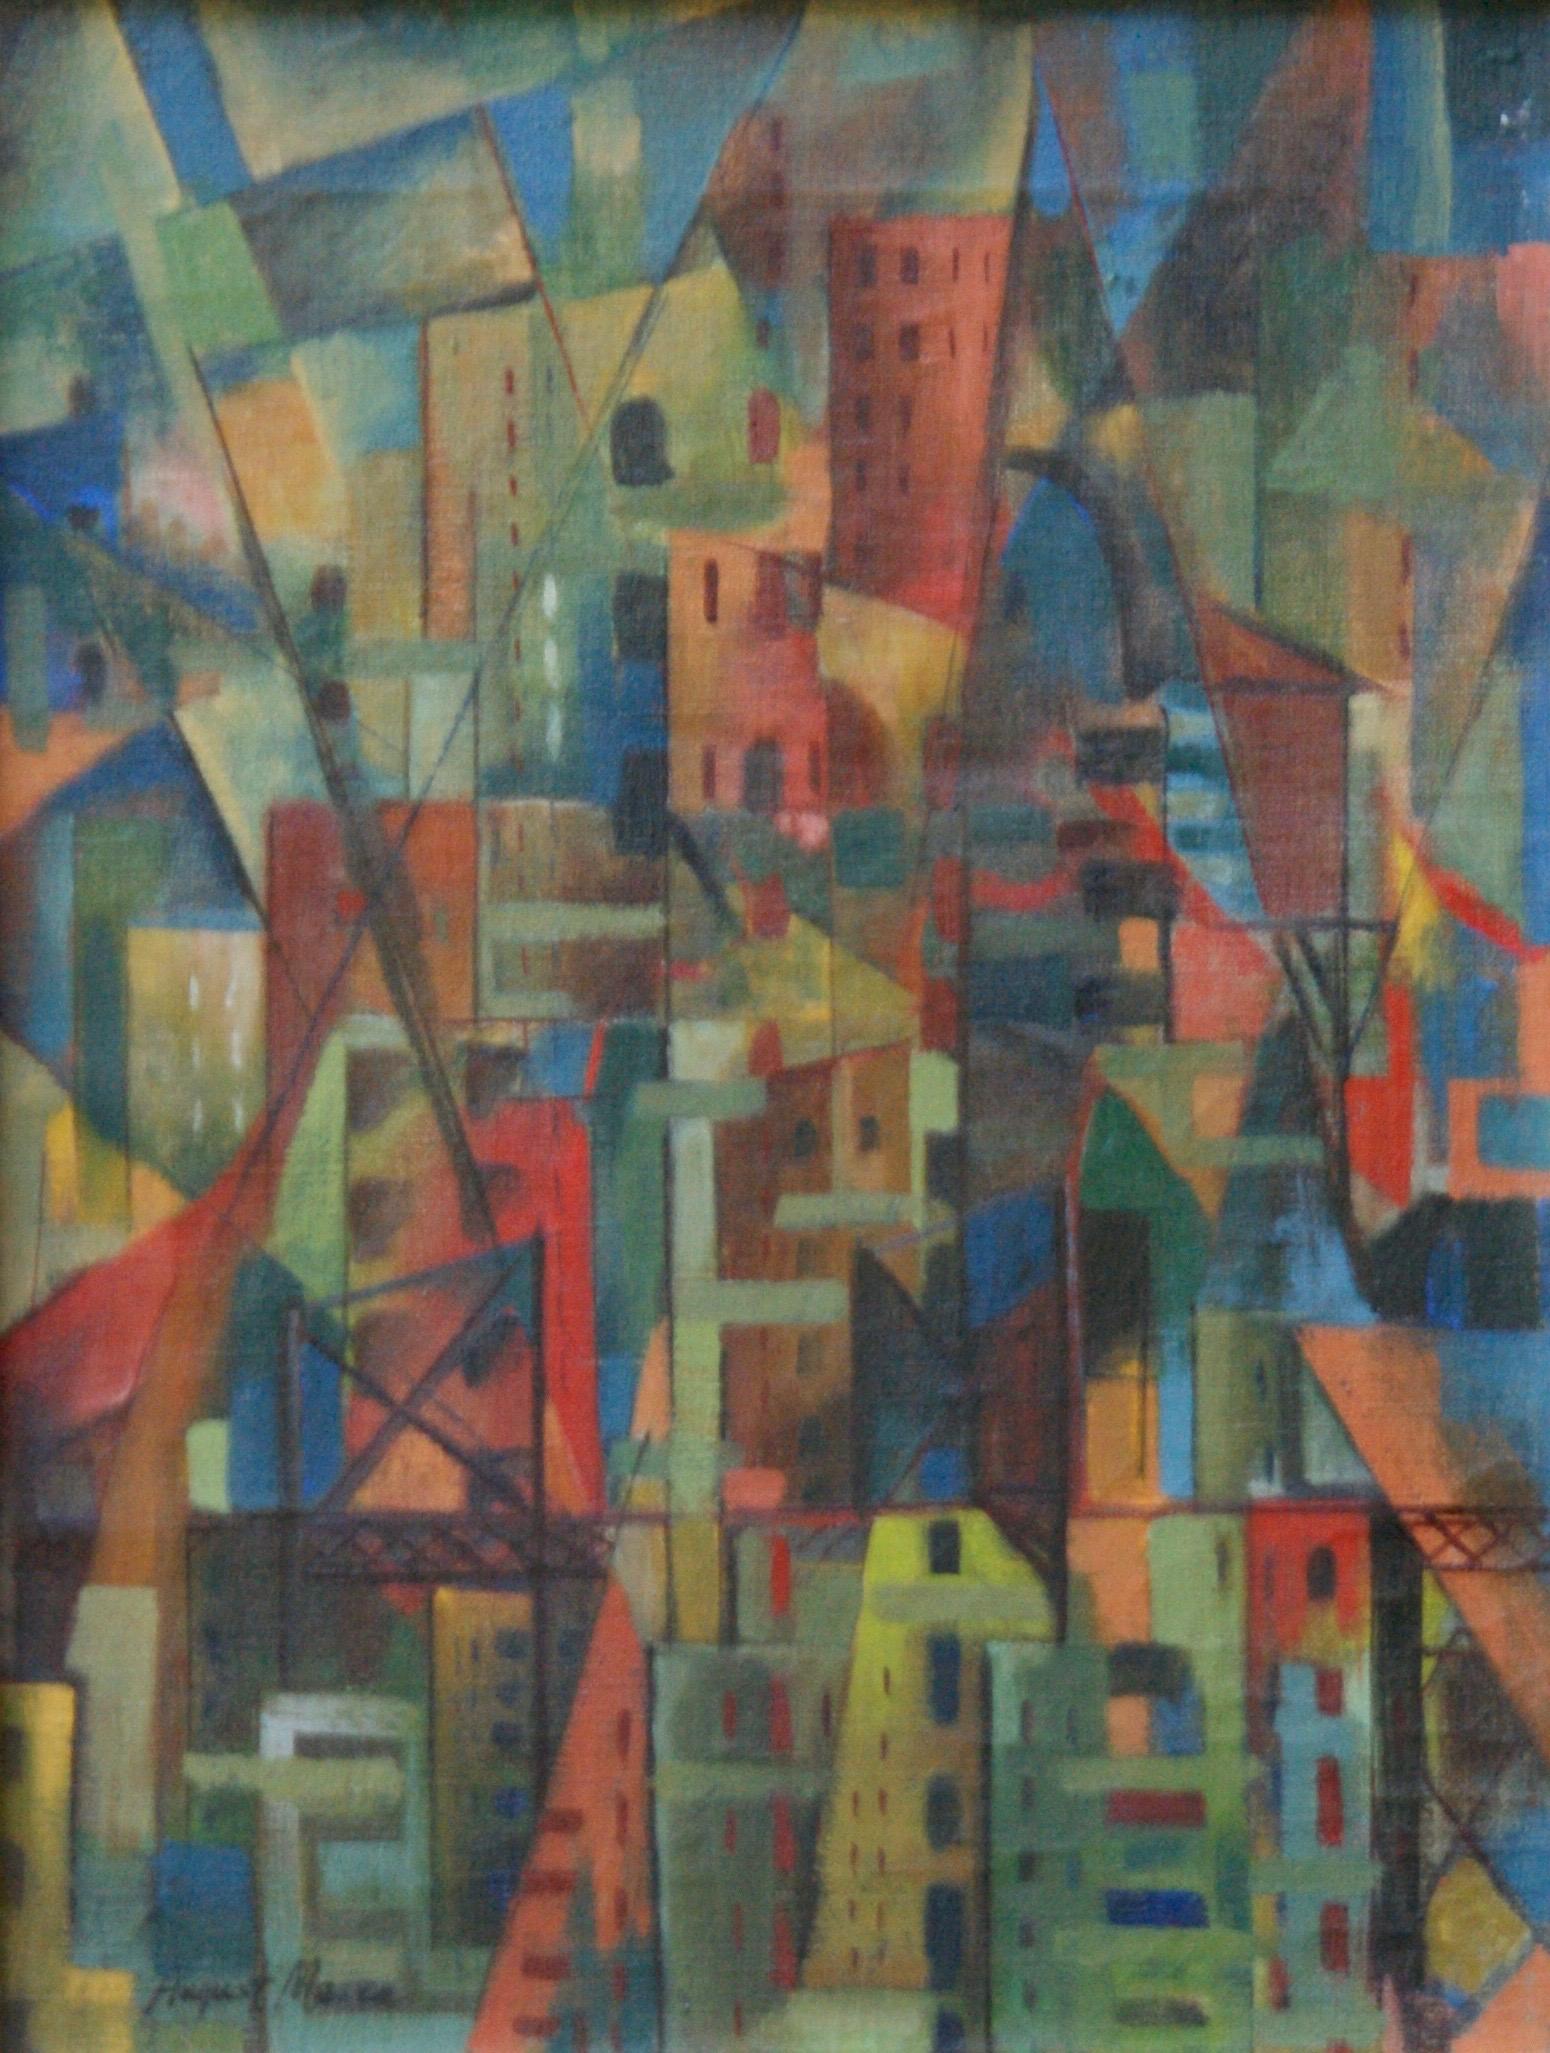 Peinture à l'huile géométrique abstraite américaine WPA, champ de couleur, abstrait, moderne, non objectif - Painting de August Mosca